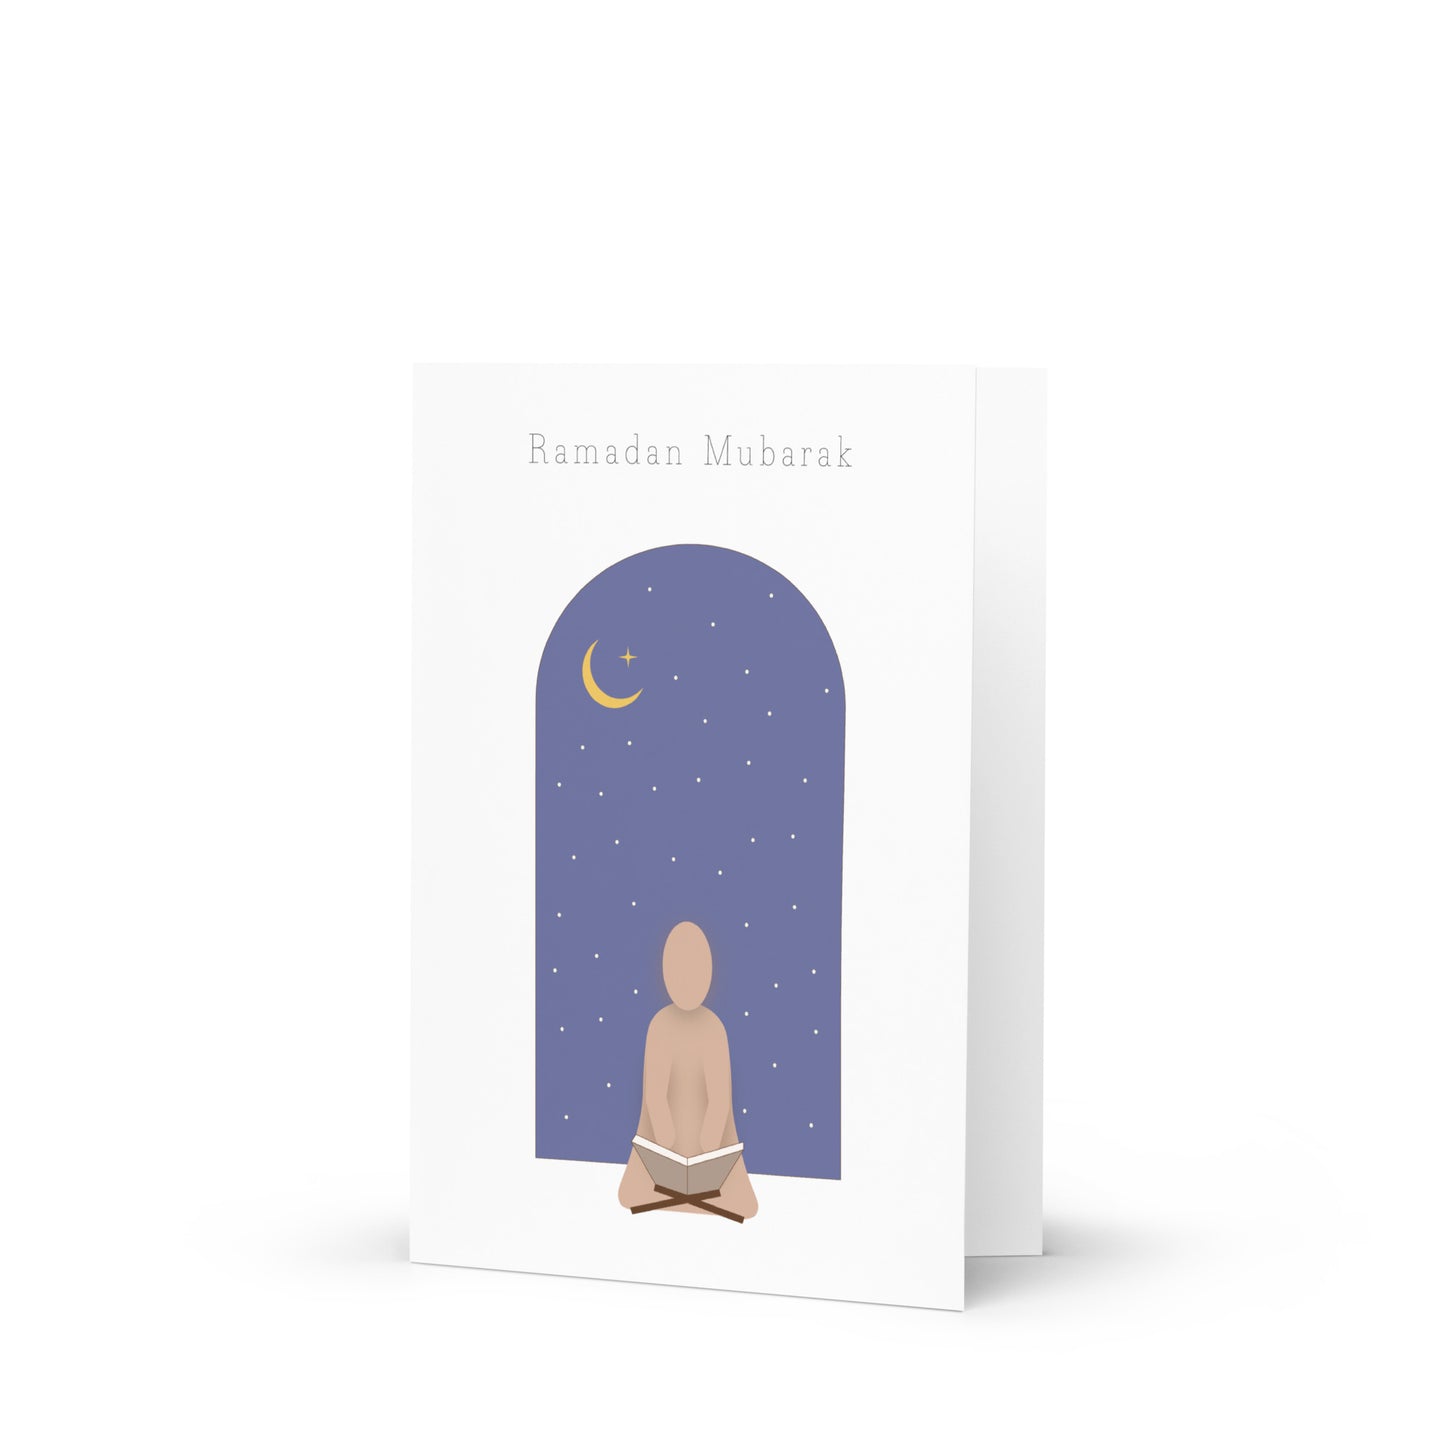 Ramadan Mubarak - Greeting card